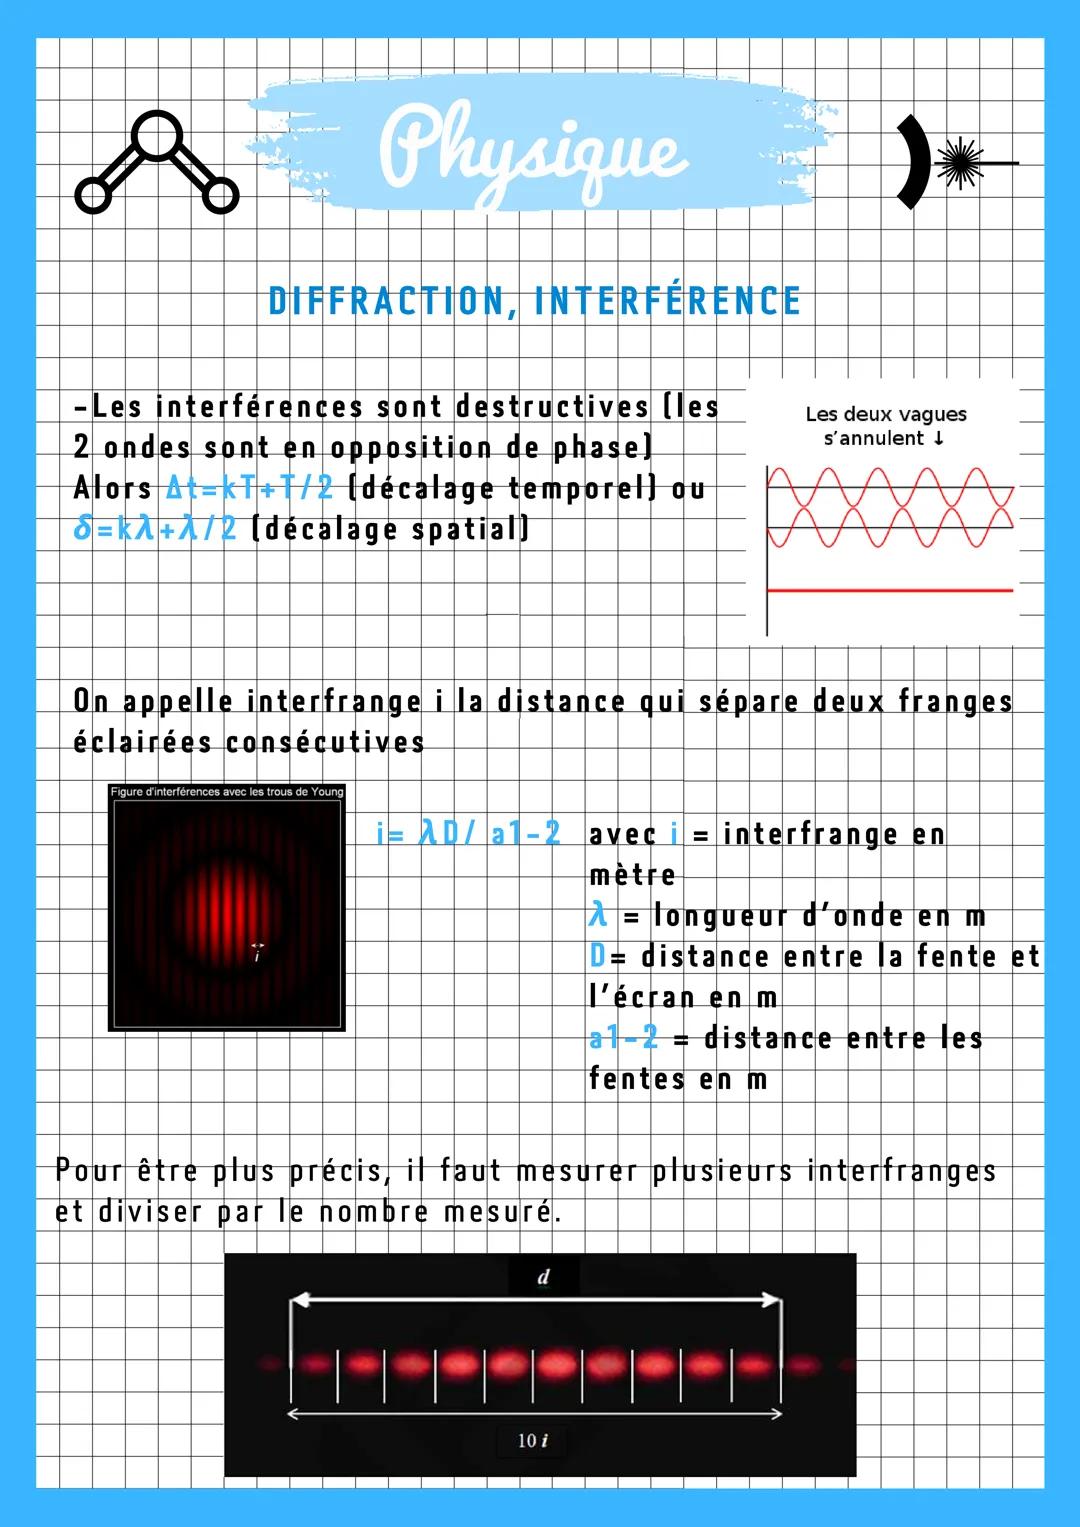 & Physique
DIFFRACTION, INTERFERENCE
Diffraction:
Modification de la direction de propagation d'une onde au
passage d'une petite ouverture o